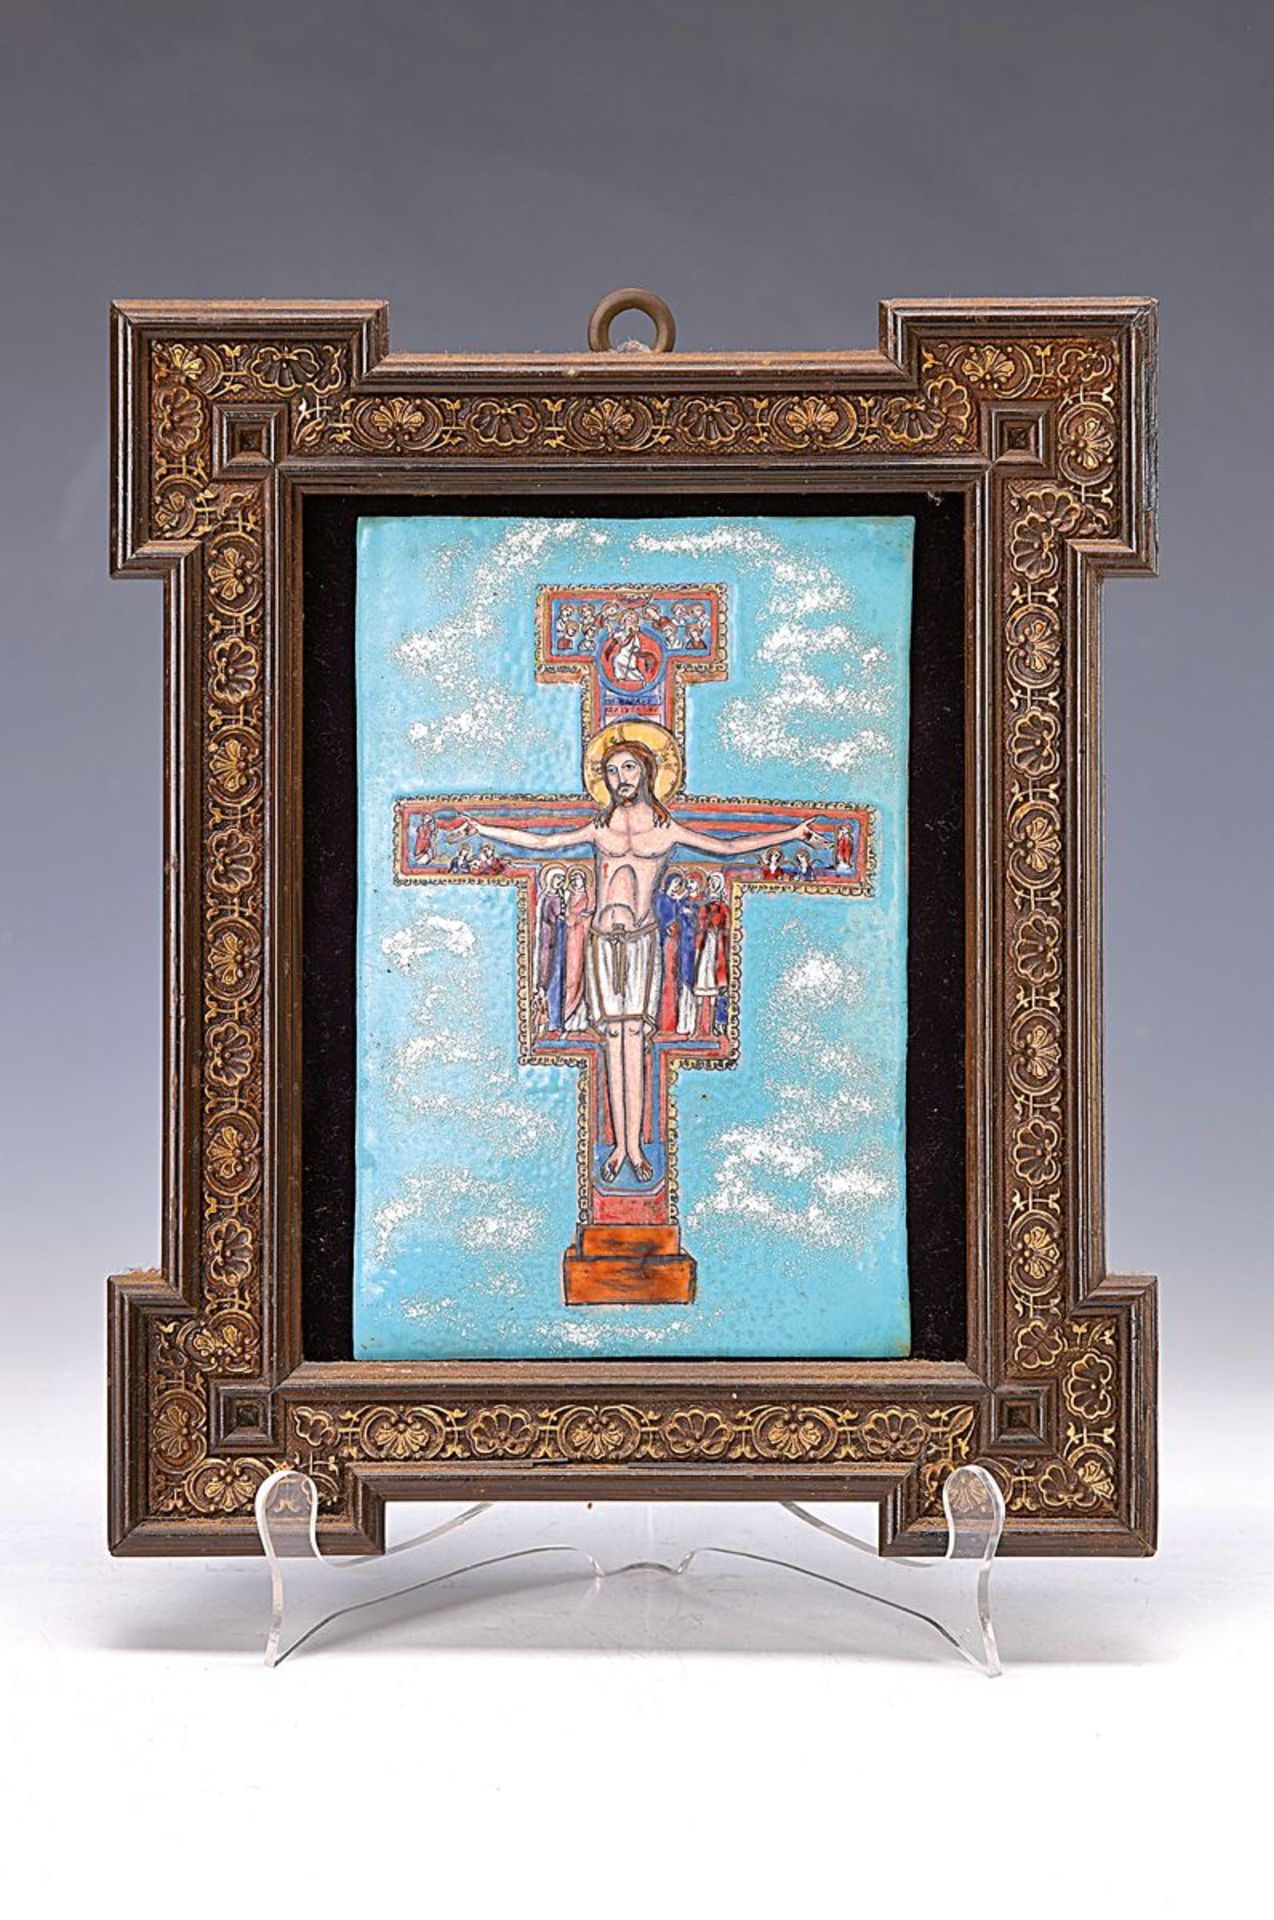 Emailbild, Limoges, 30er Jahre, Kupfer bunt emailliert, orthodoxe Darstellung, Christus am Kreuz mit